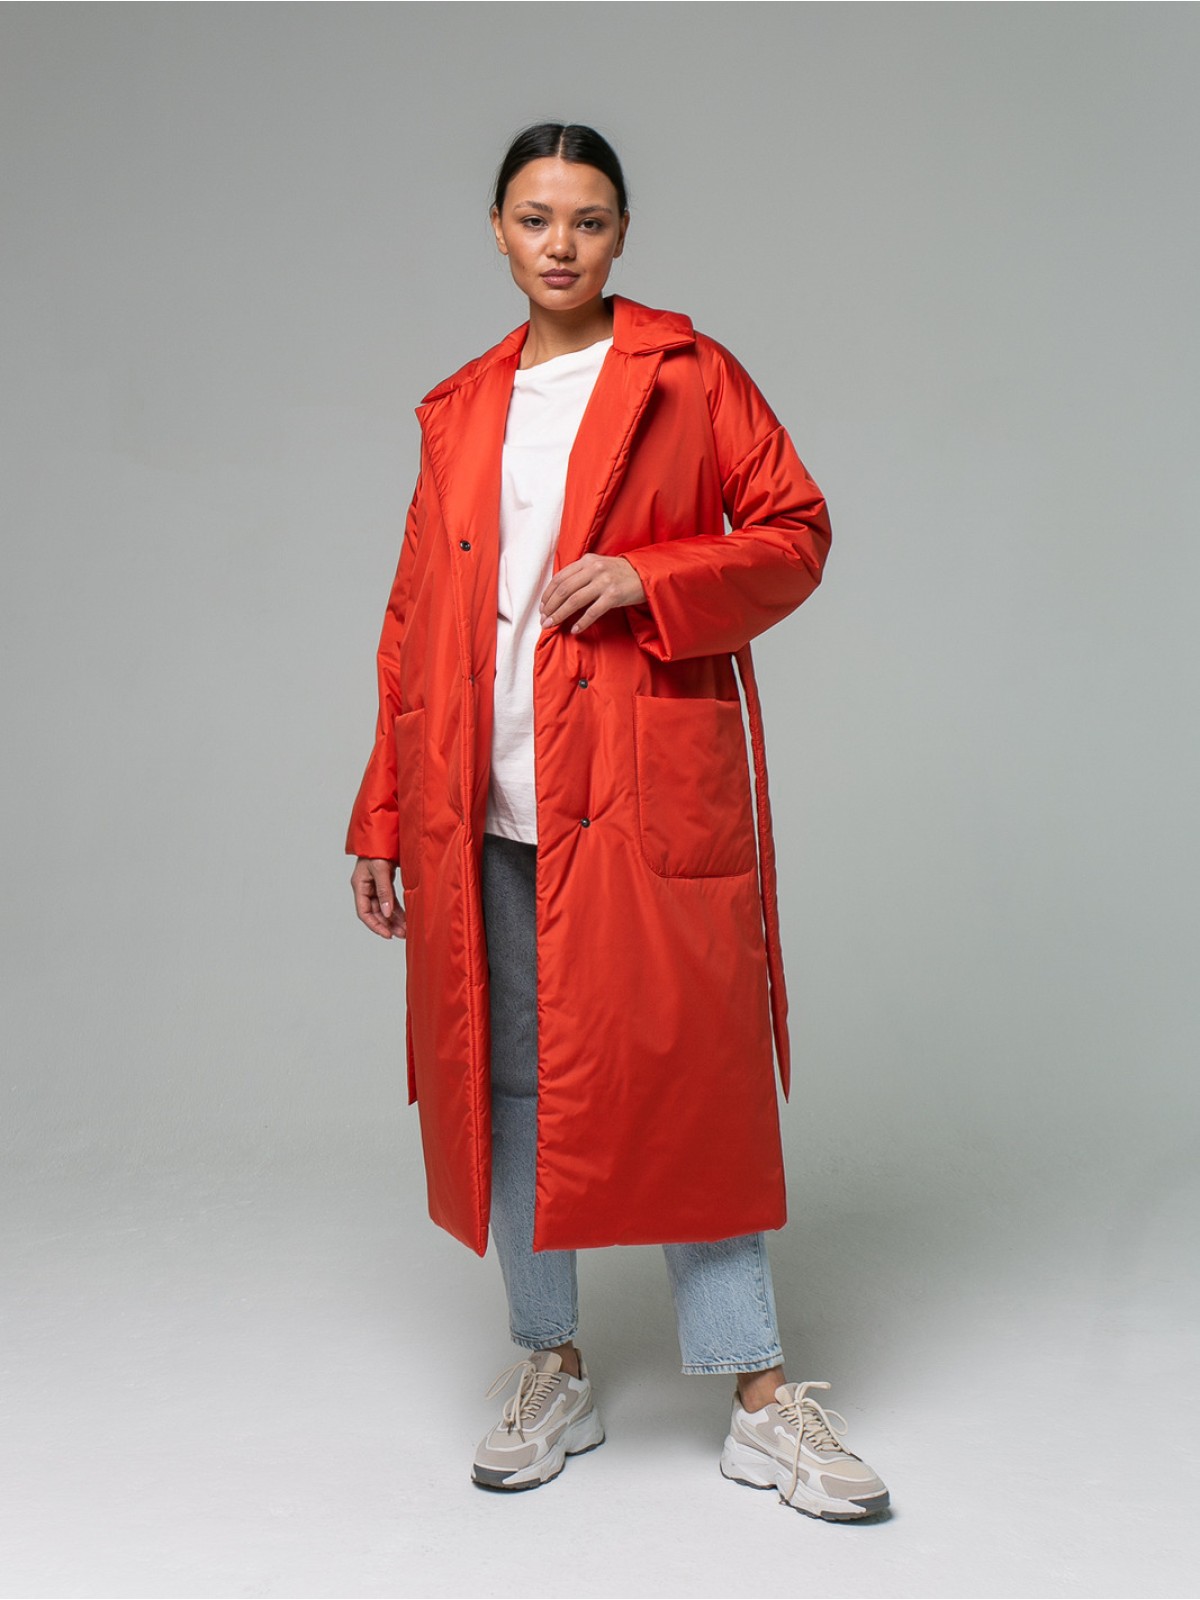 Пальто из плащевой ткани Mandarin Red (Оранжевый)